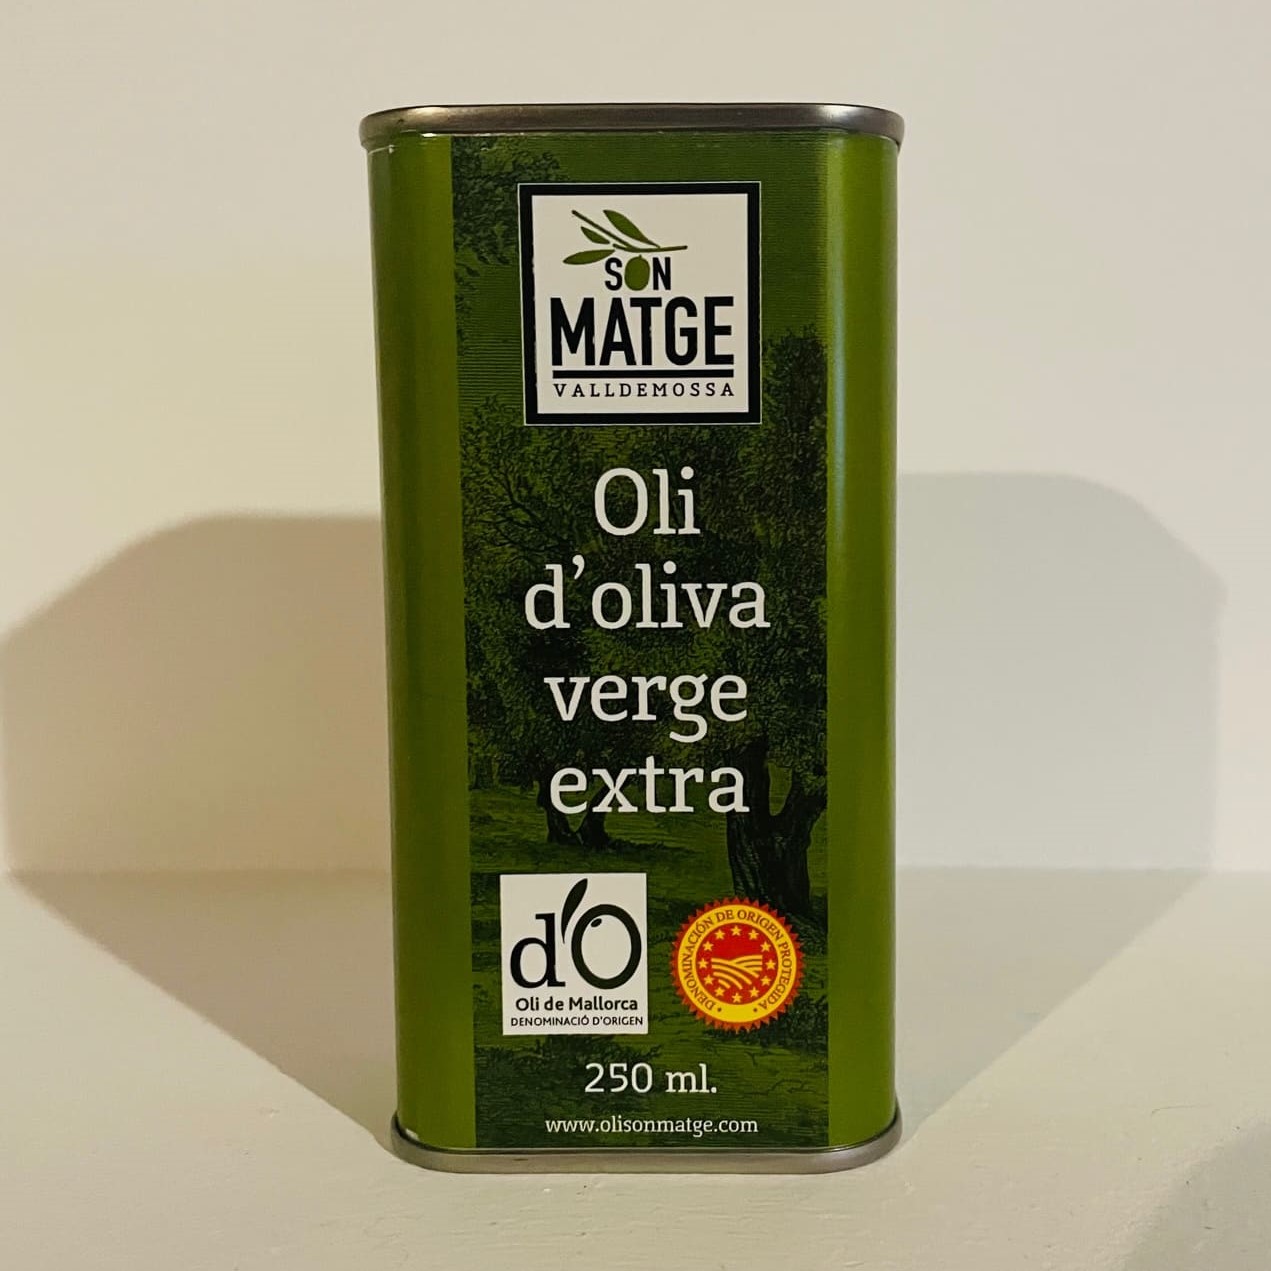 Son Matge PDO Oli de Mallorca Oil in 250 ml can